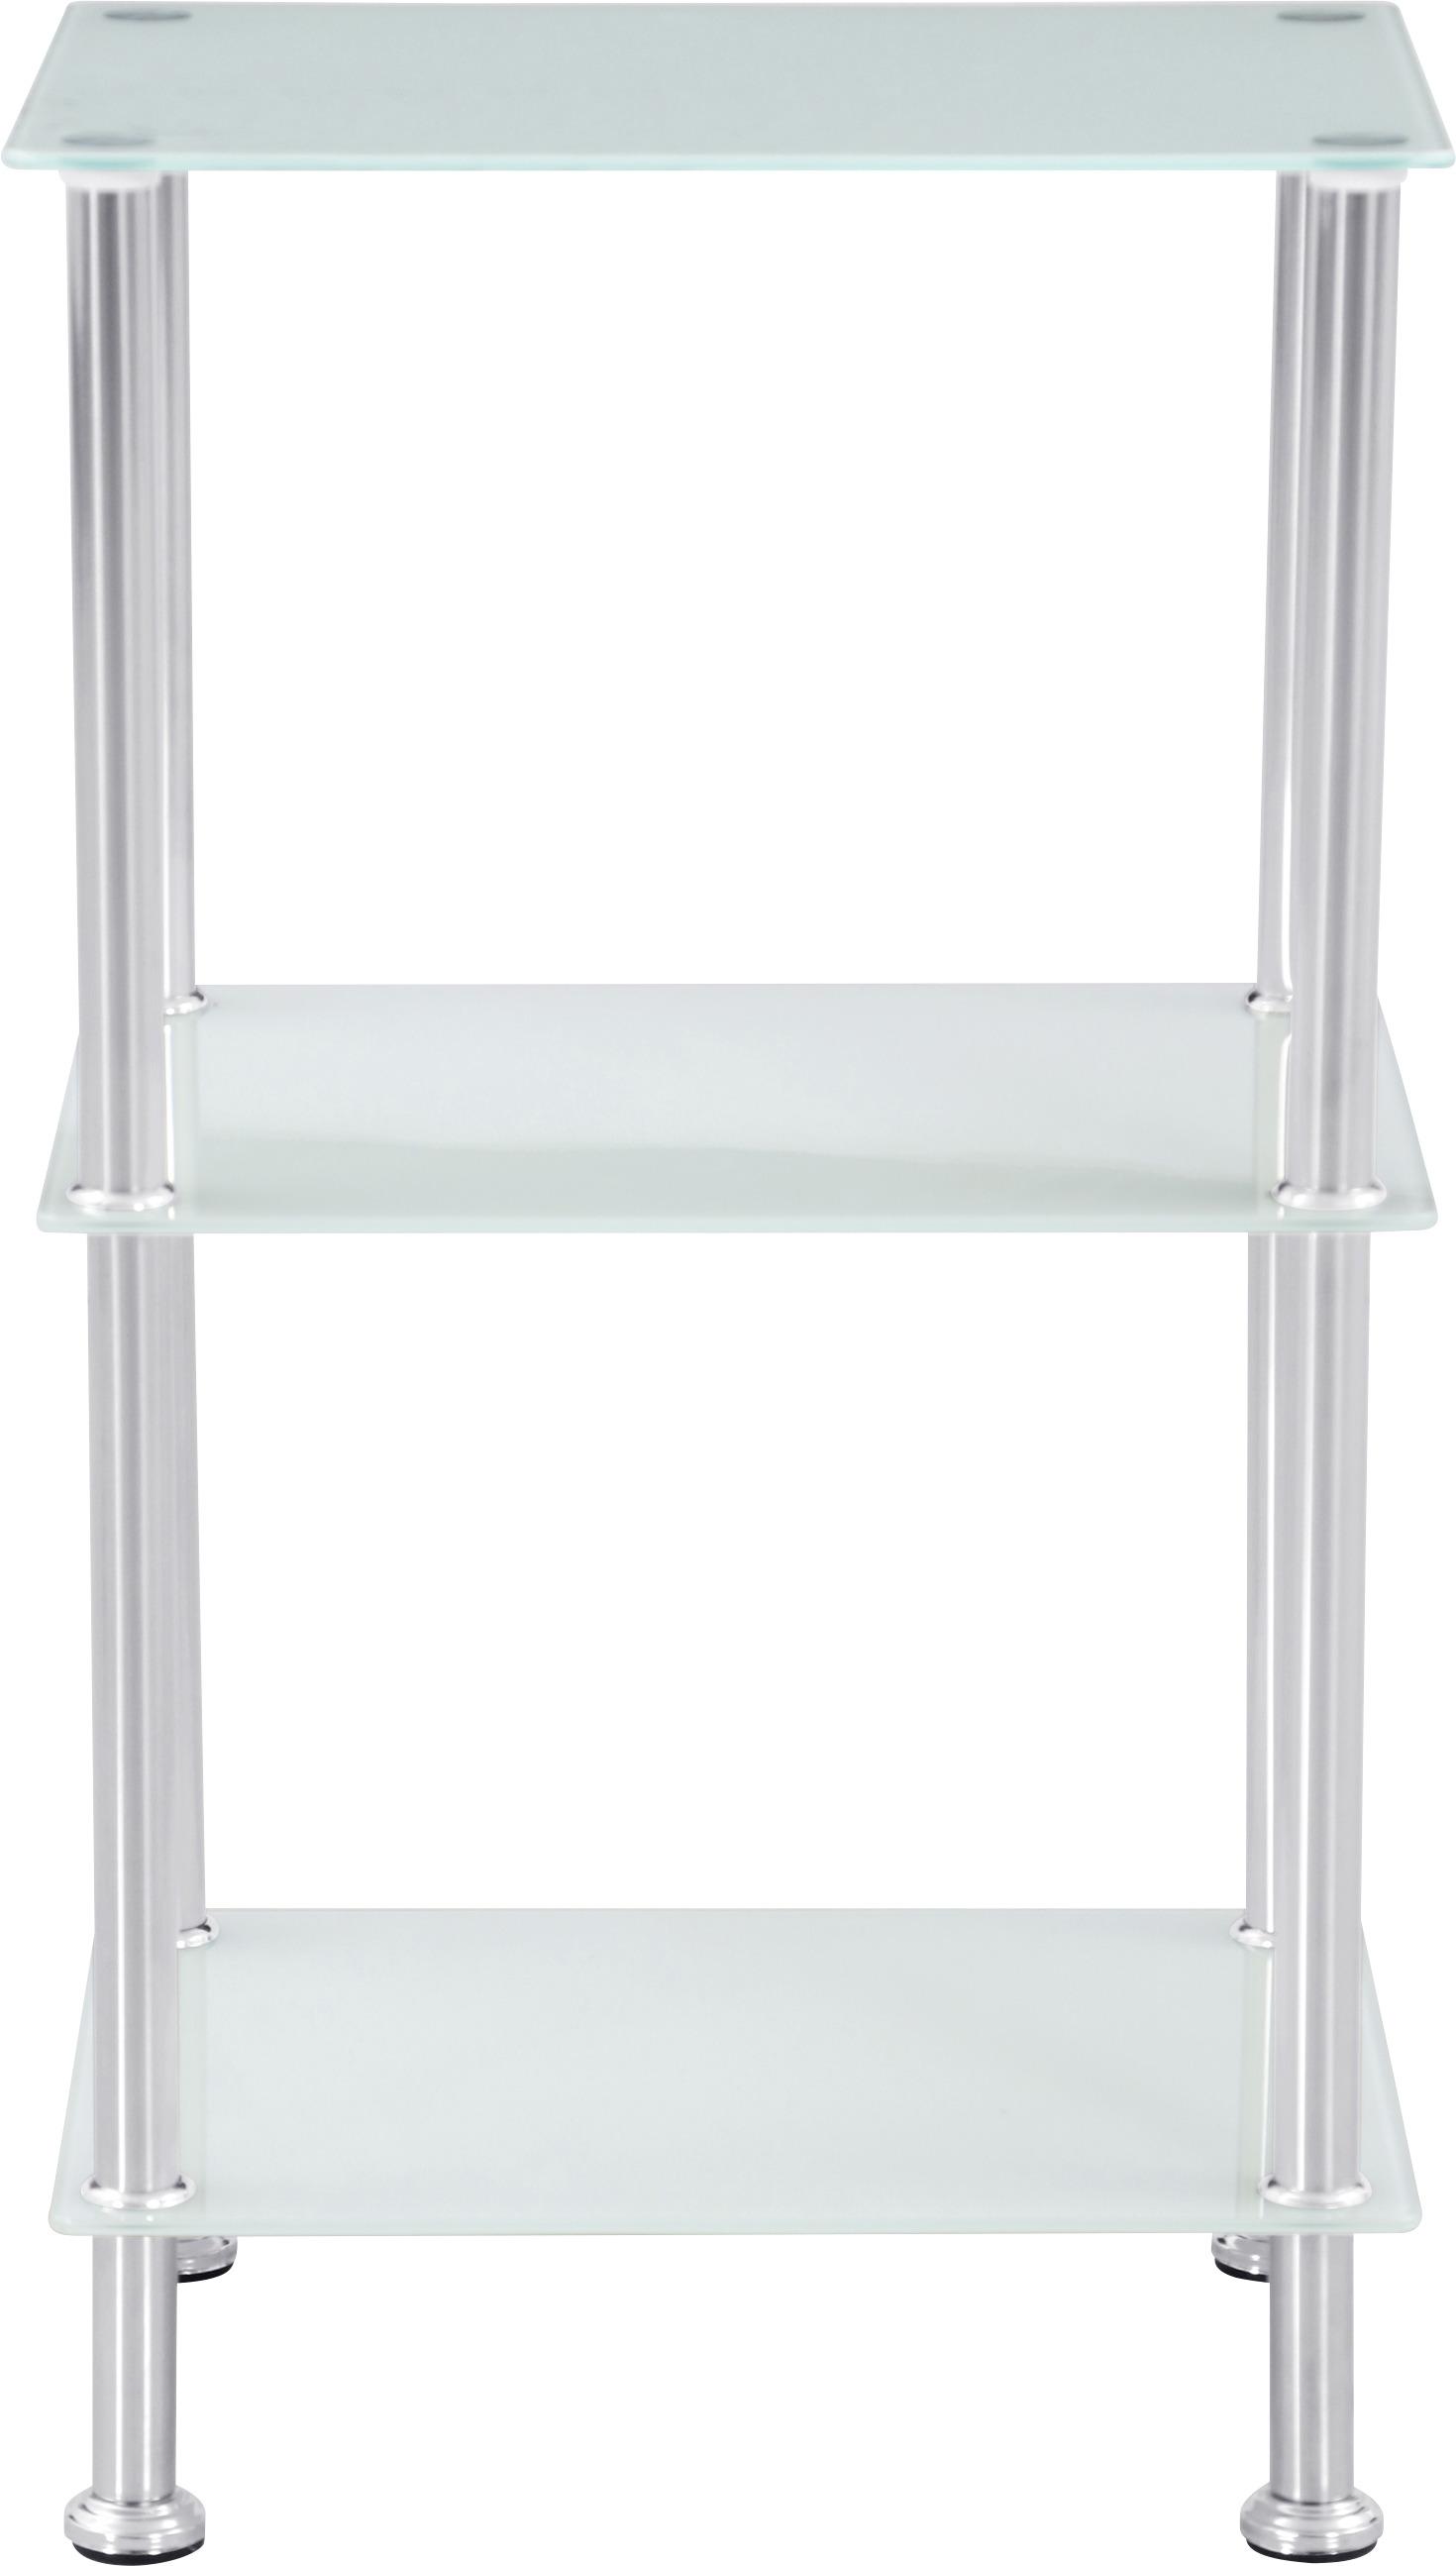 Regal mit Glasfächern Glare B 40cm, Edestahl/Weiß - Edelstahlfarben/Weiß, MODERN, Glas/Metall (40/70/30cm) - Luca Bessoni